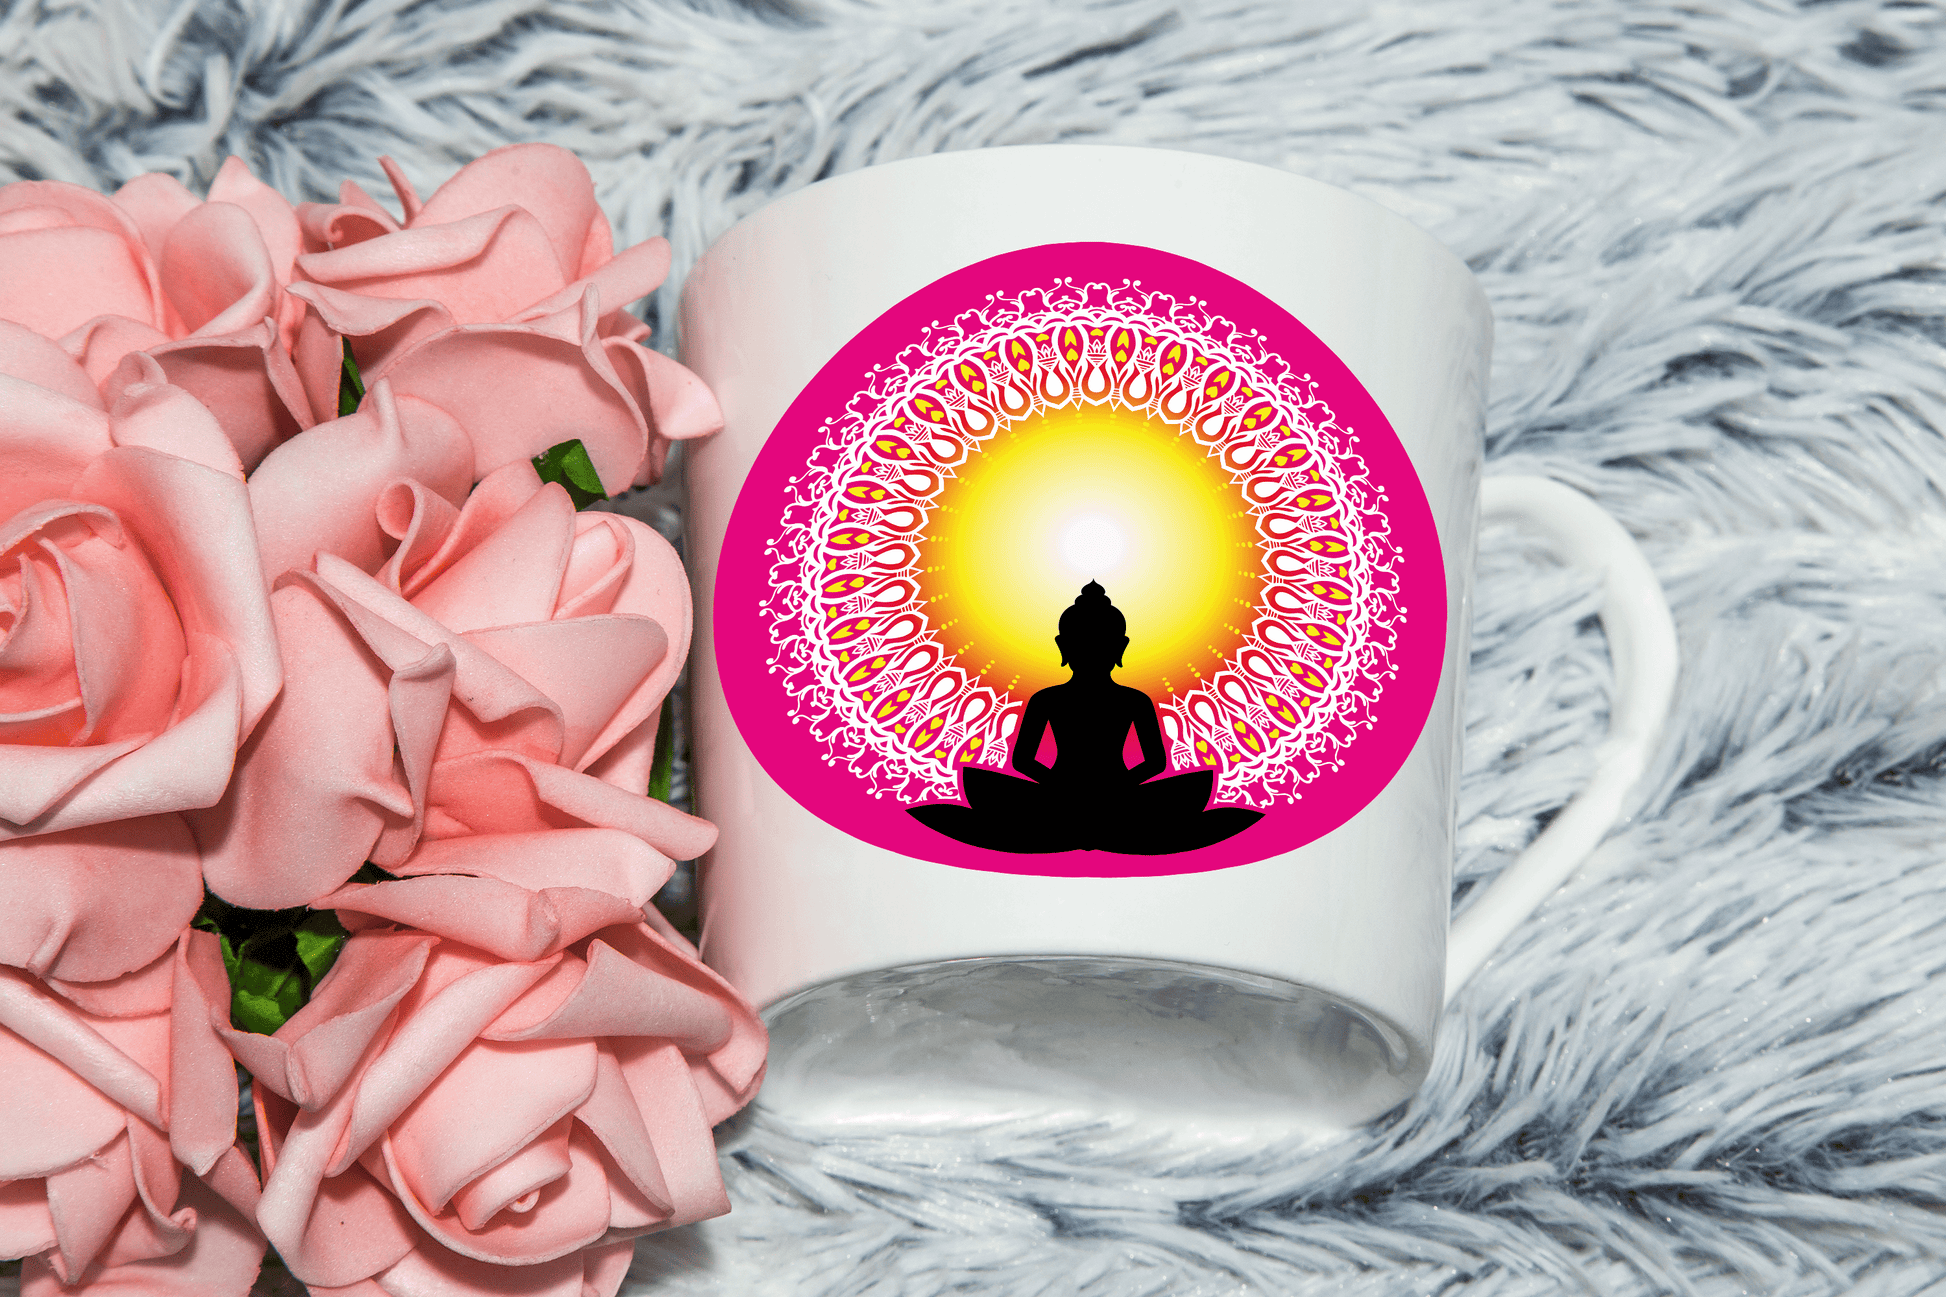  Beautiful Buddha Mandella Mug by Free Spirit Accessories sold by Free Spirit Accessories